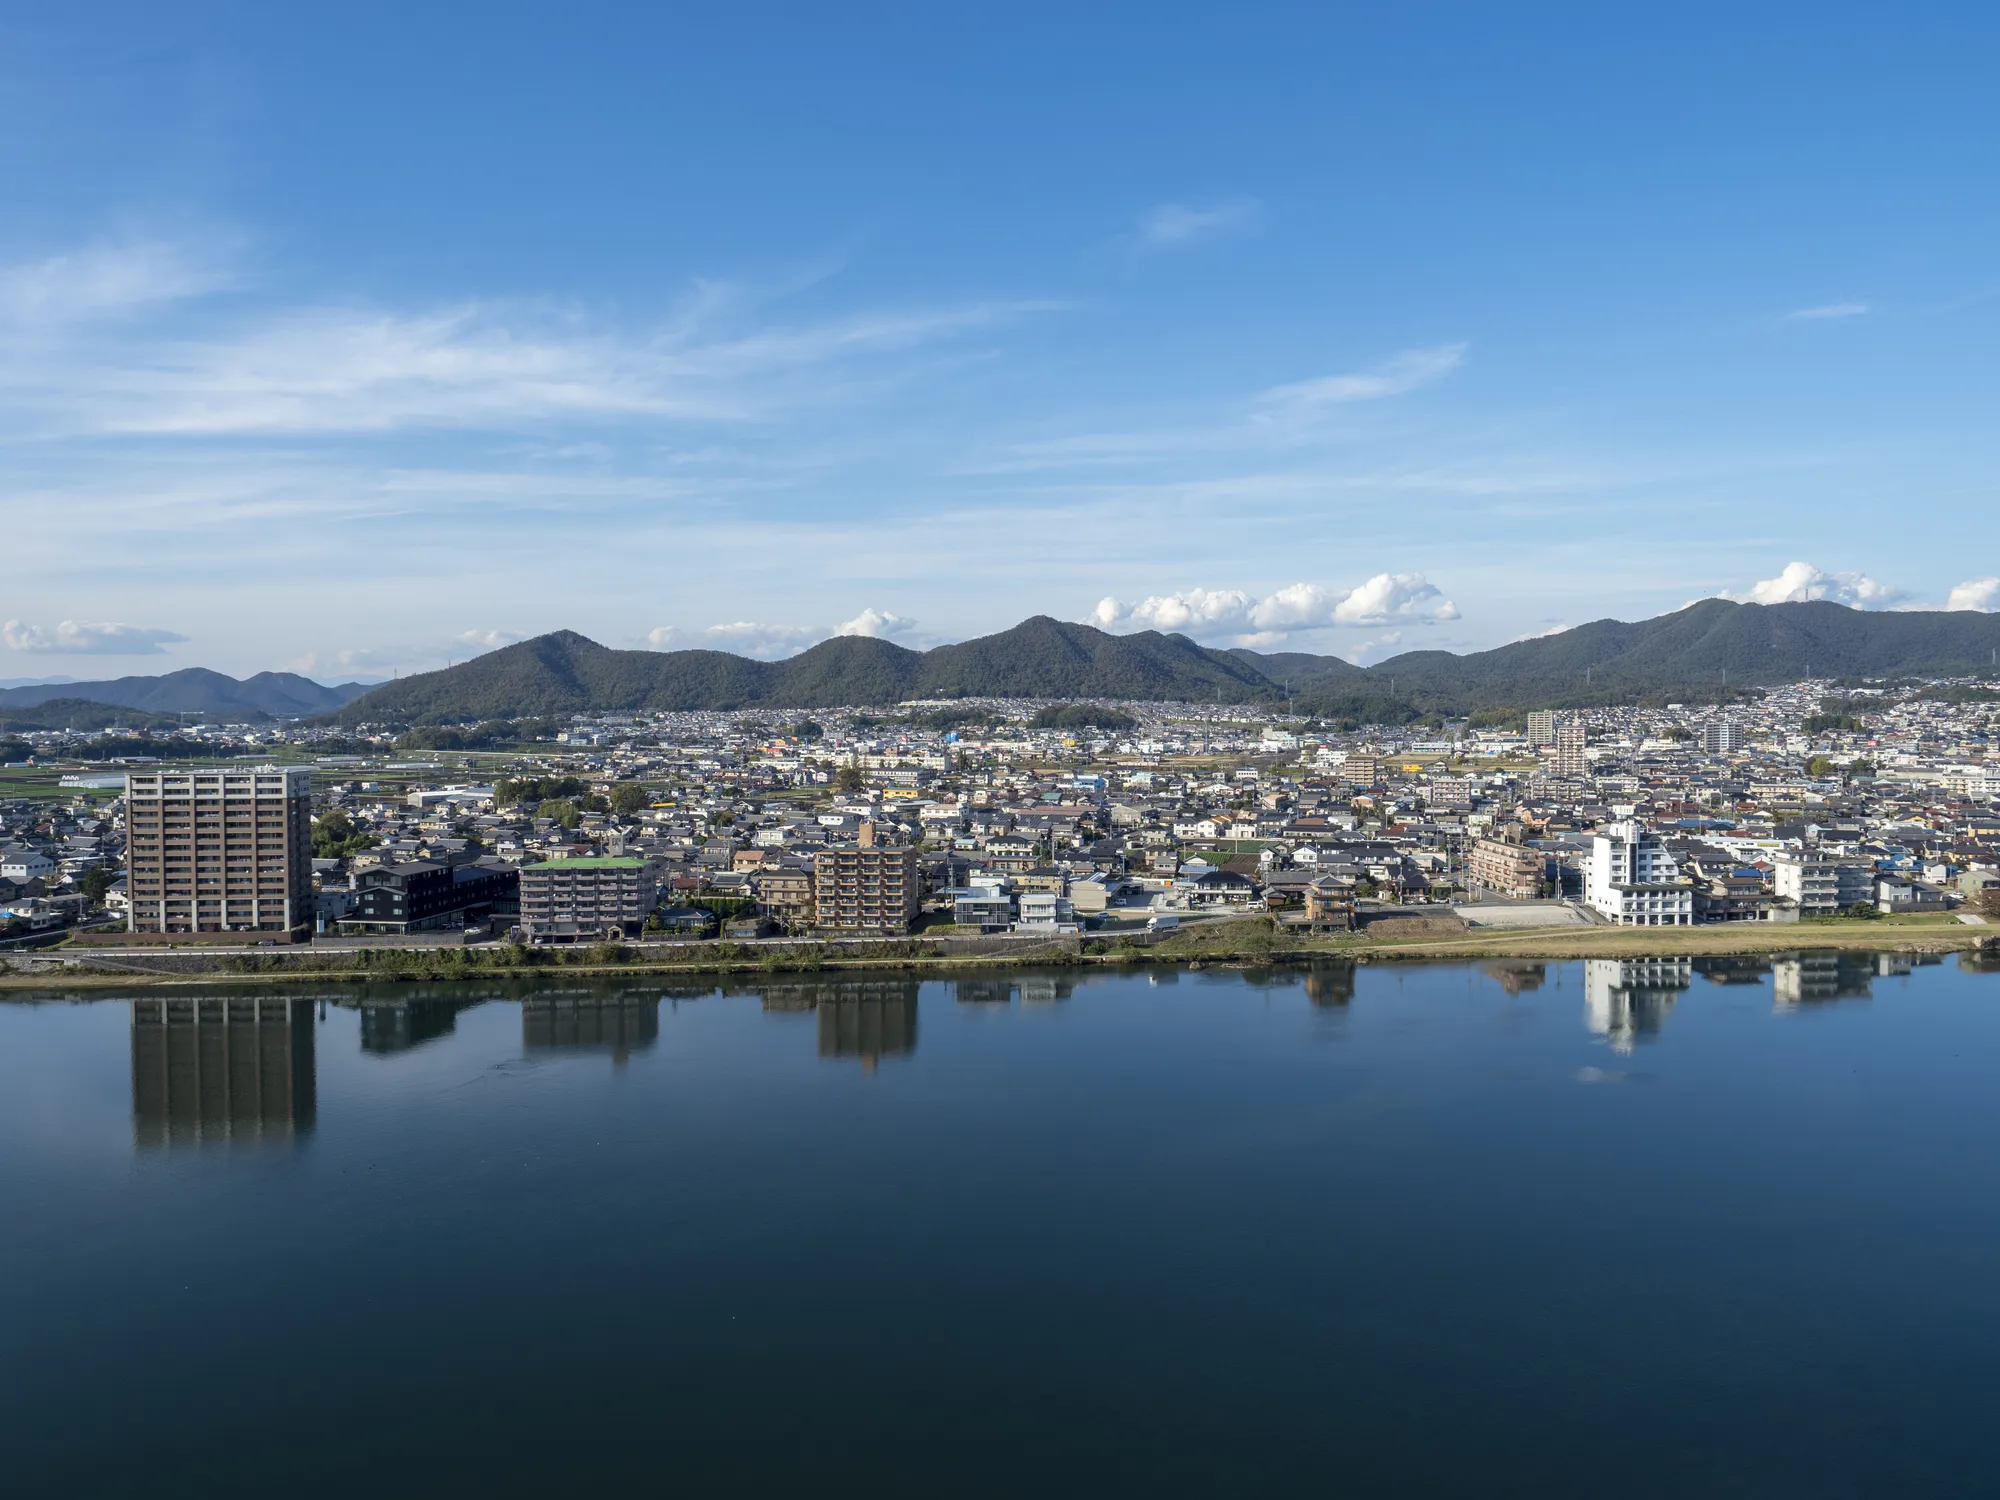 愛知県犬山市でおすすめの観光スポット15選 Relux Journal